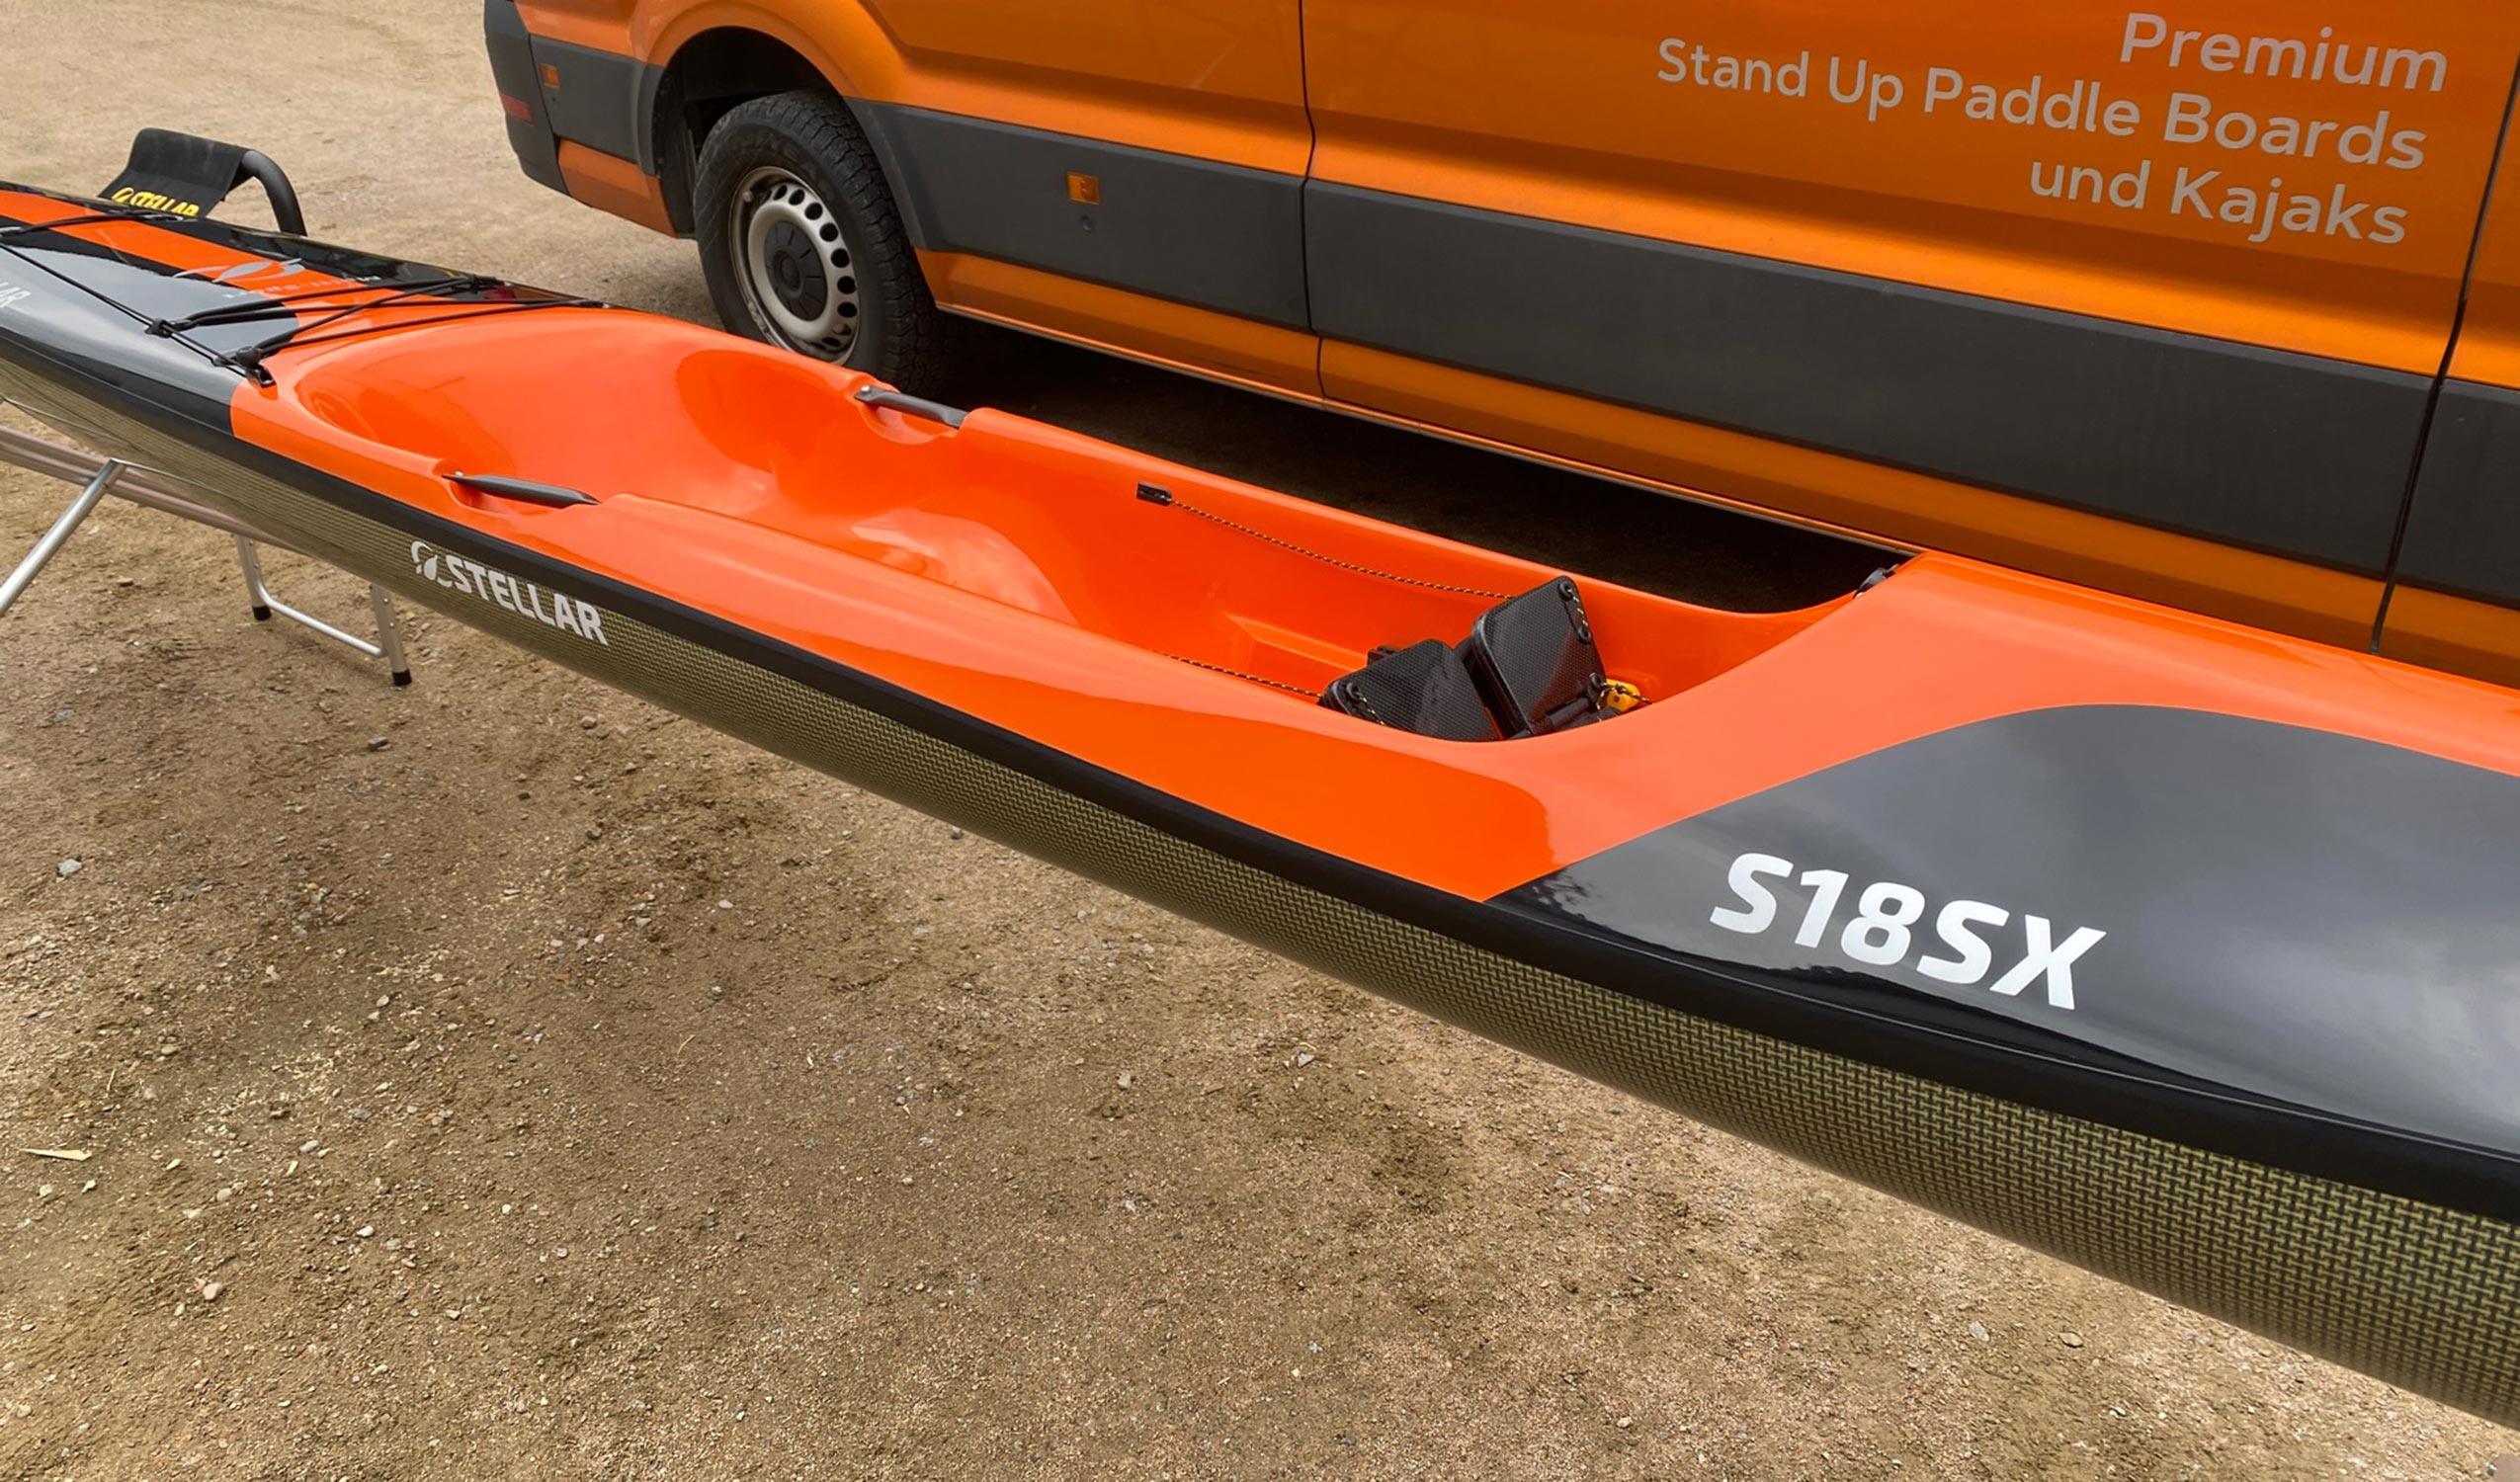 Produktbild von Kajak " S18S X Multisport-schwarz orange " der Marke STELLAR Lightweight für 3390.00 €. Erhältlich online bei Lite Venture ( www.liteventure.de )